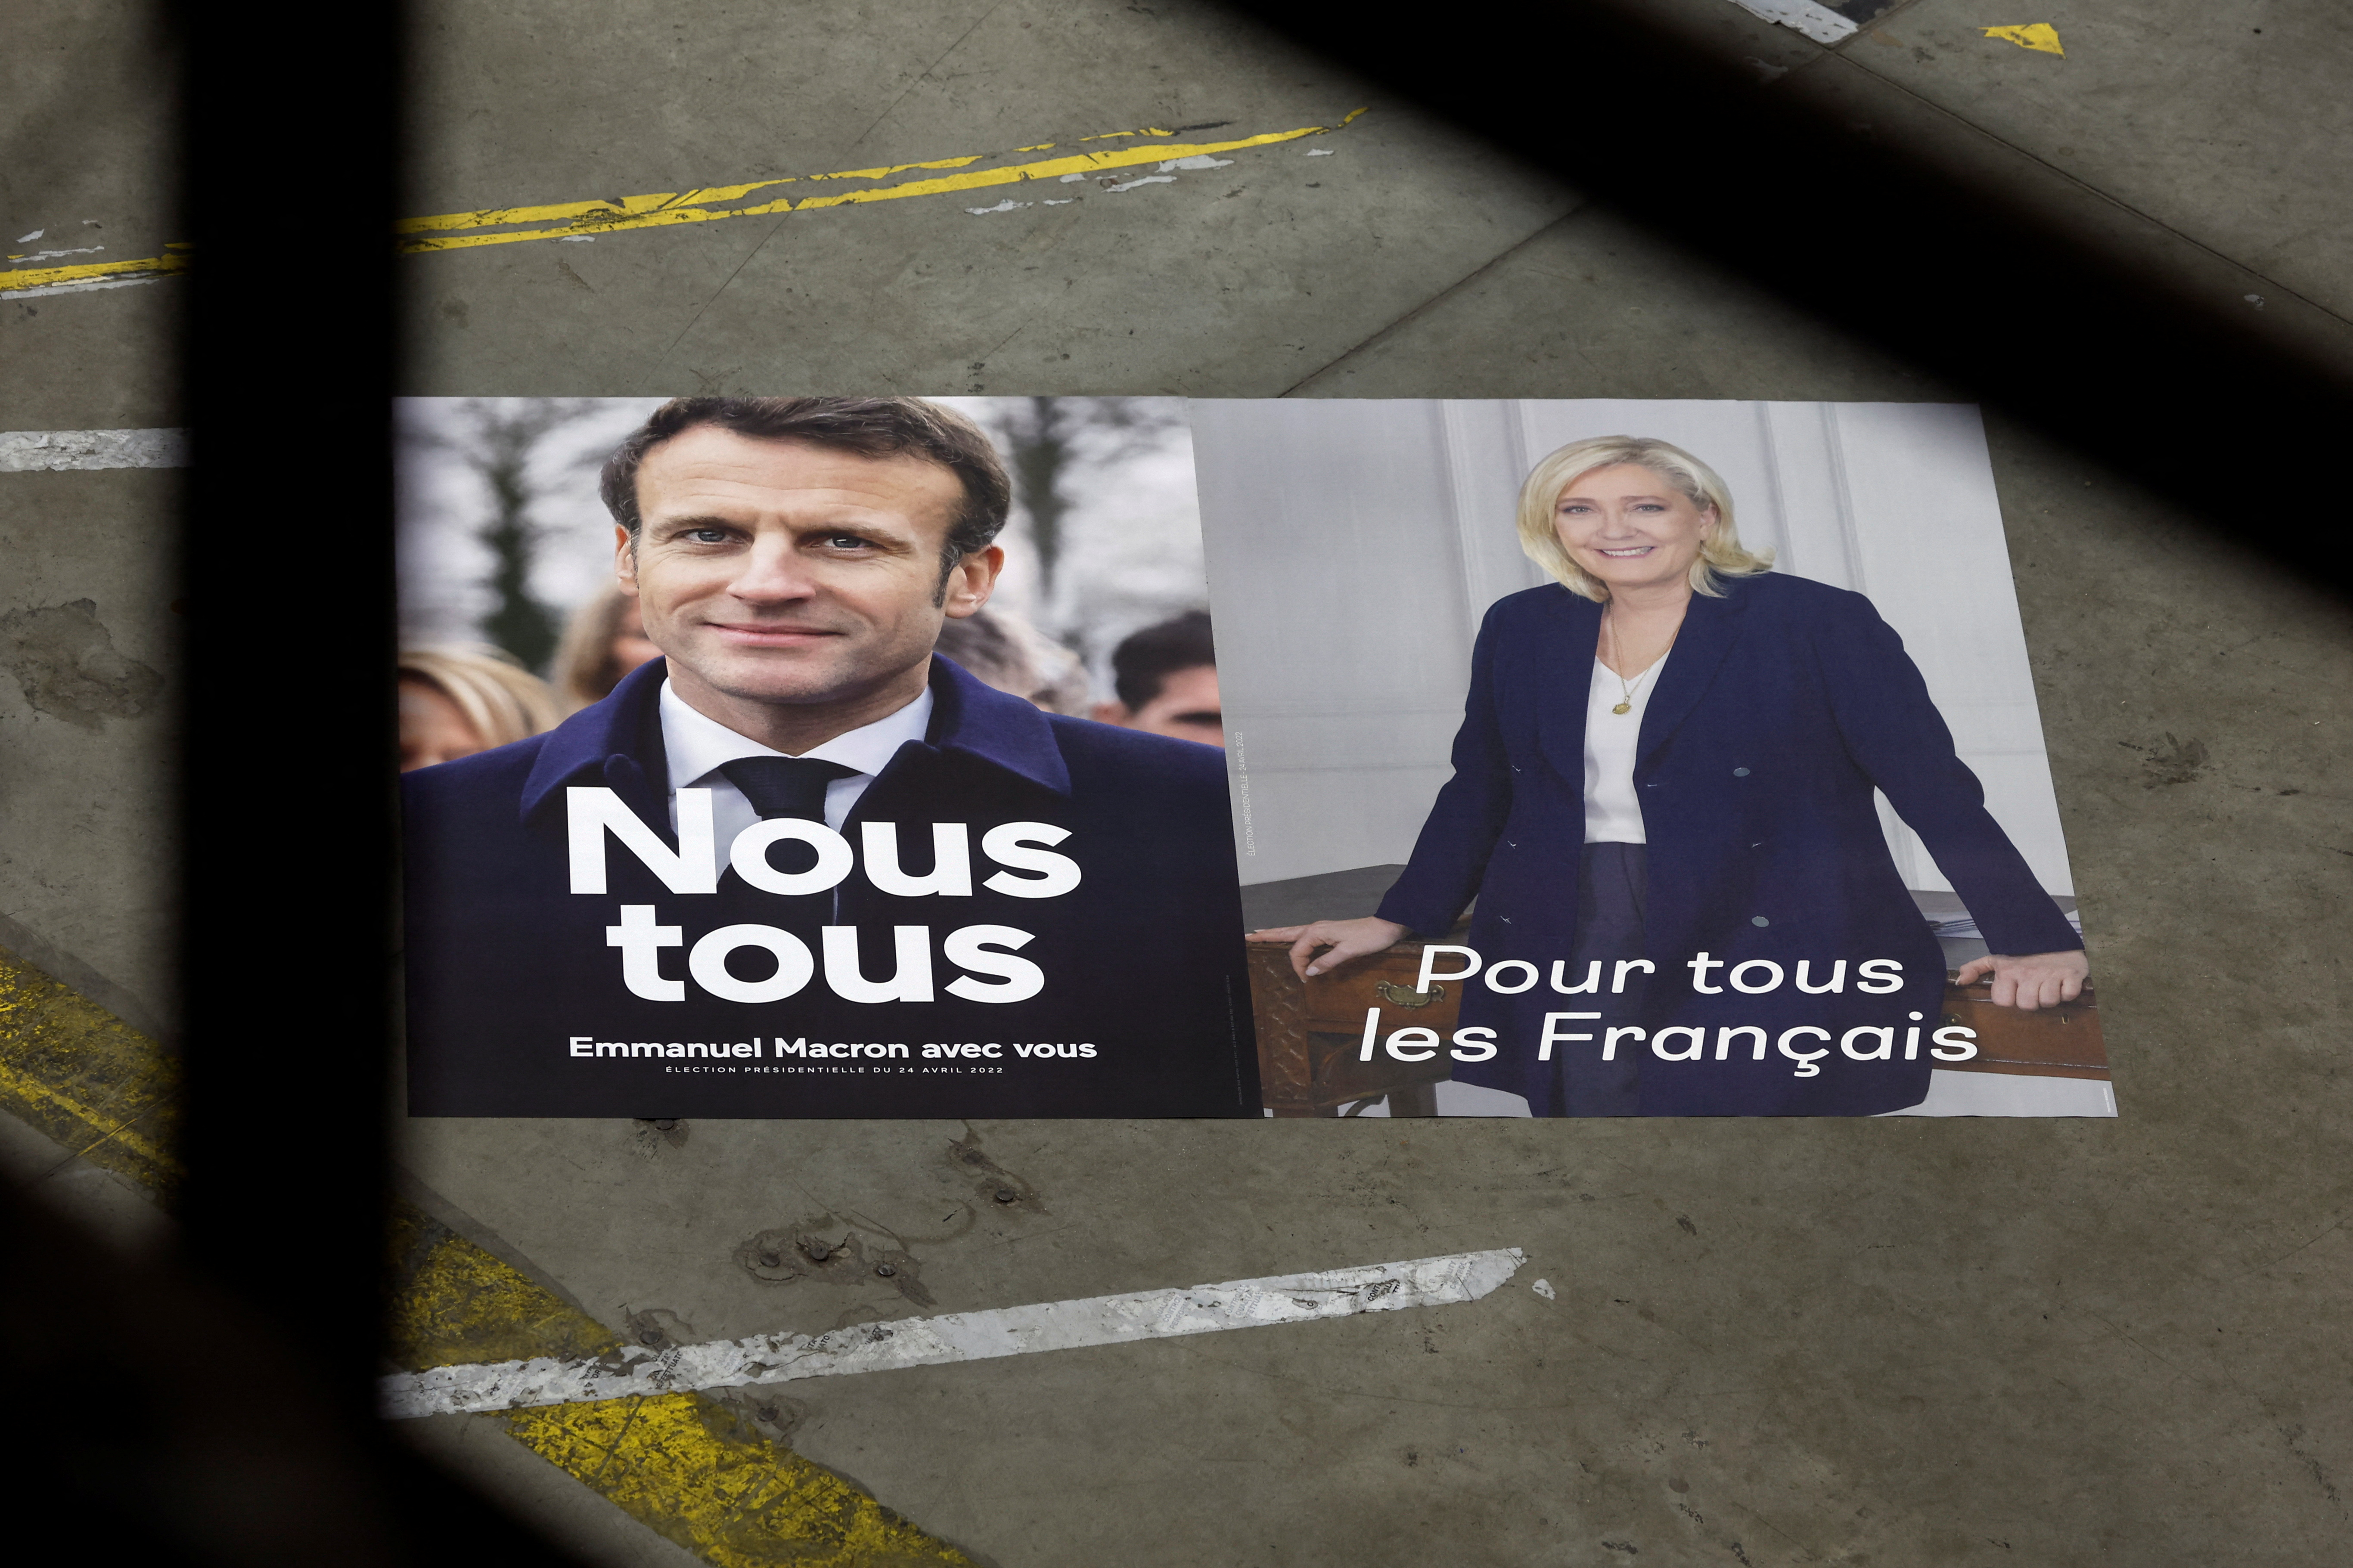 Más de 400 personalidades del mundo de la cultura en Francia firmaron una carta rogando a que se vote por Emmanuel Macron (REUTERS/Benoit Tessier)